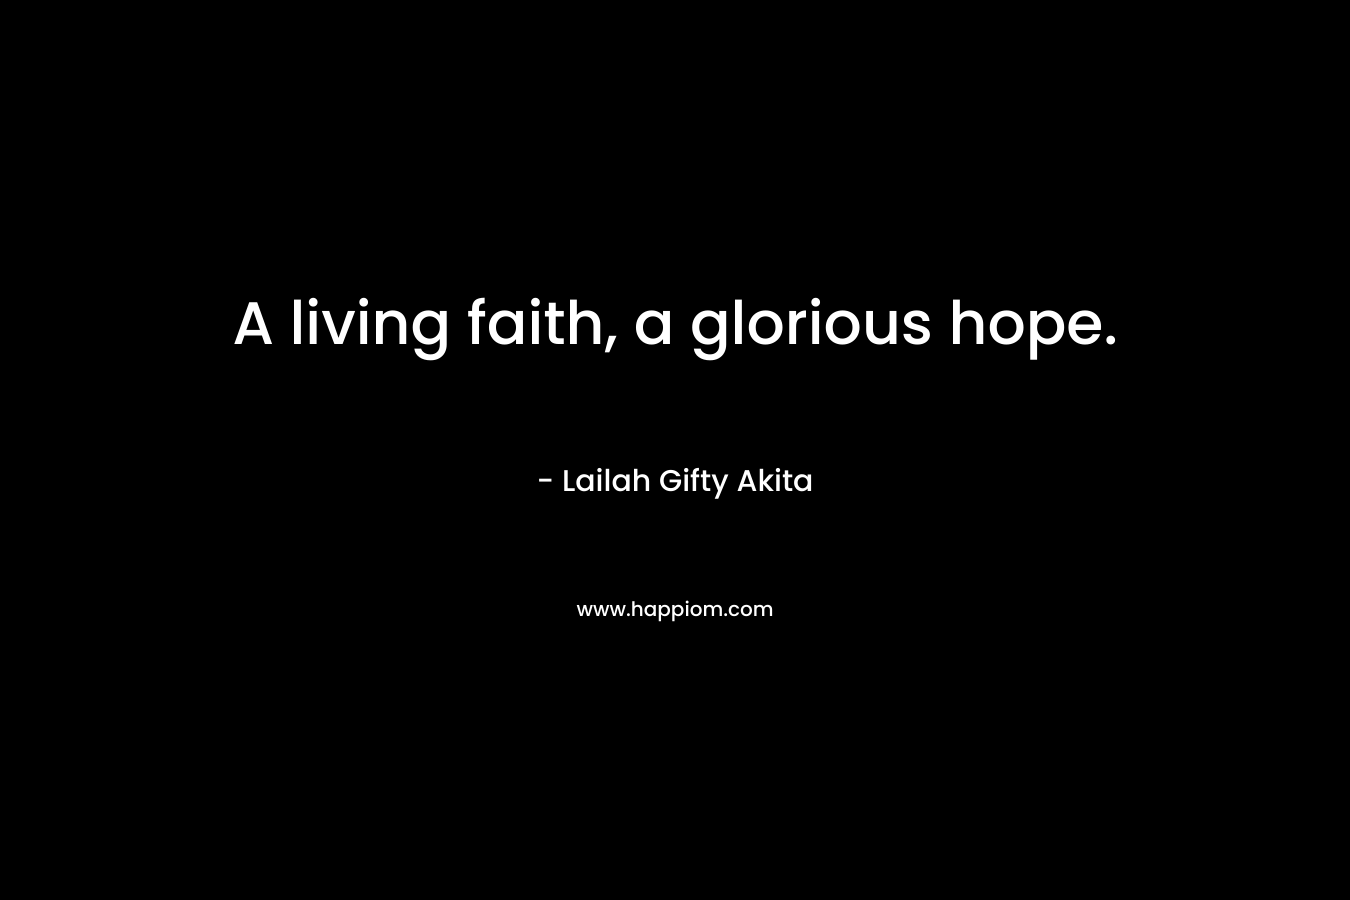 A living faith, a glorious hope.